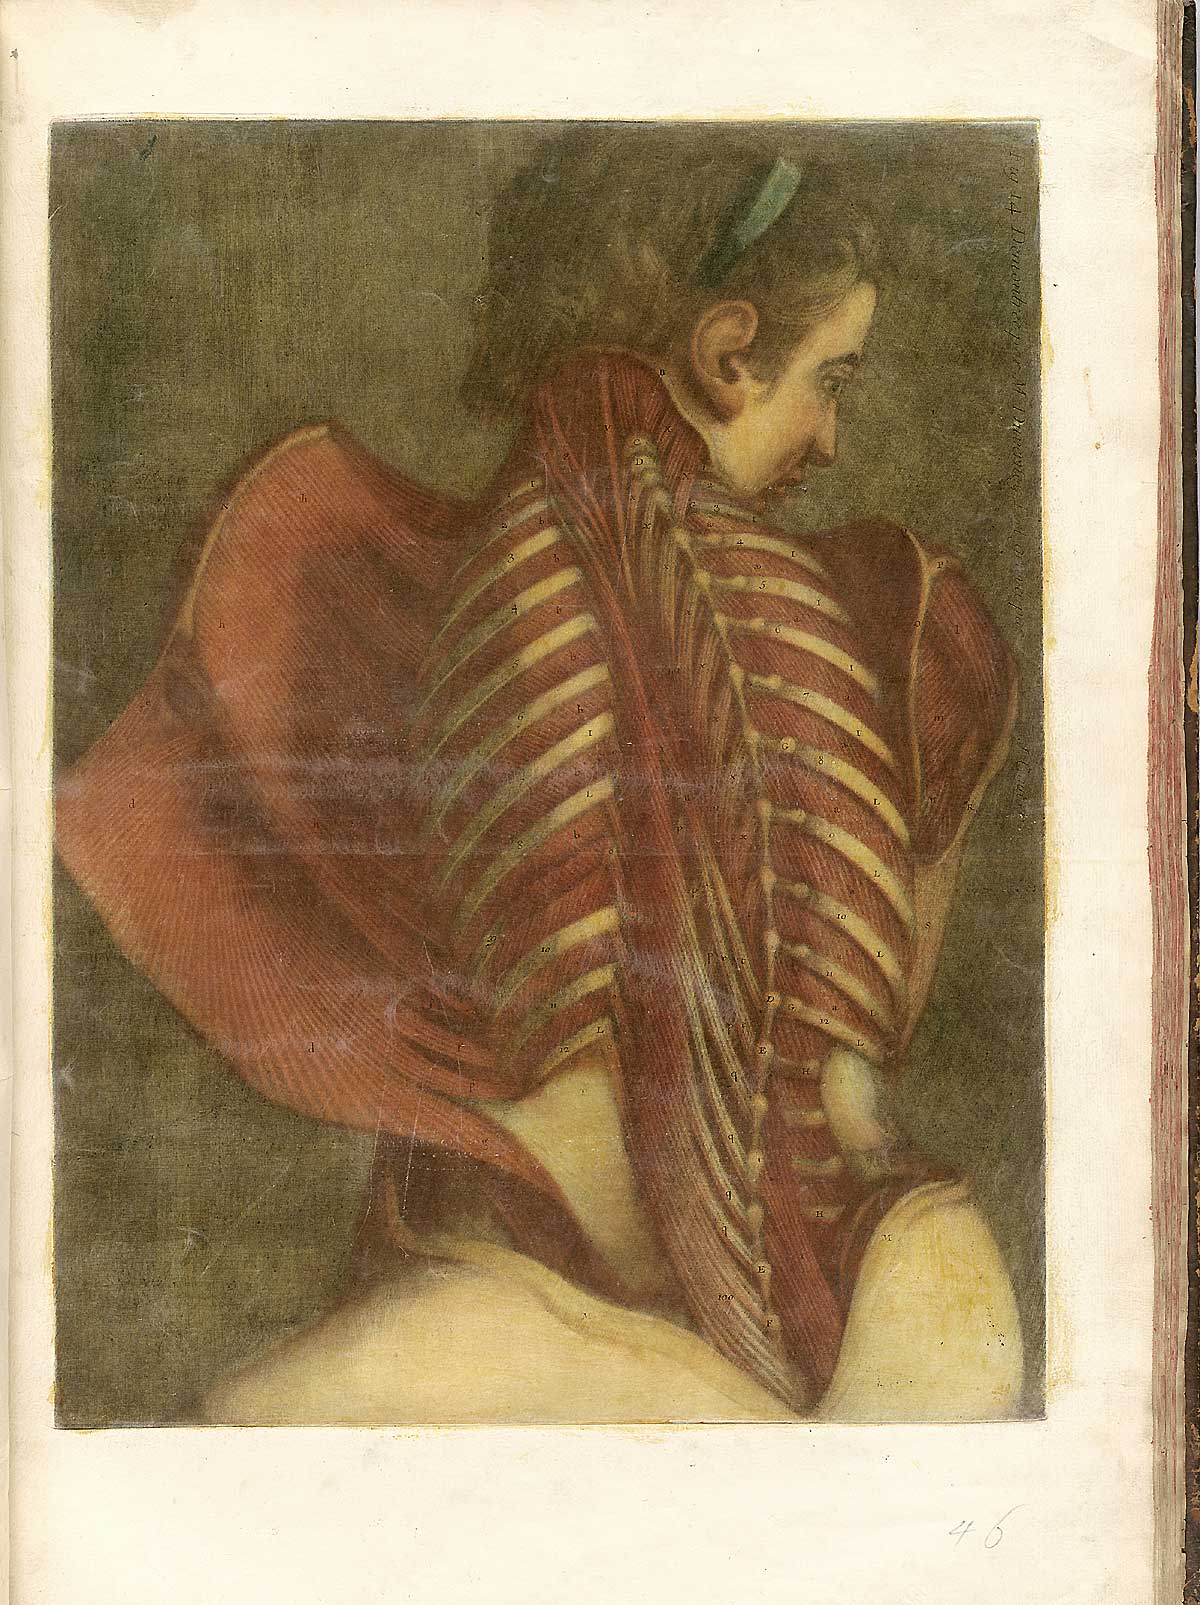 “Flayed Angel”, from Jacques Fabian Gautier d’Agoty’s Suite de l'Essai d'anatomie en tableaux imprimés, NLM Call no.: WZ 260 G283c 1745.